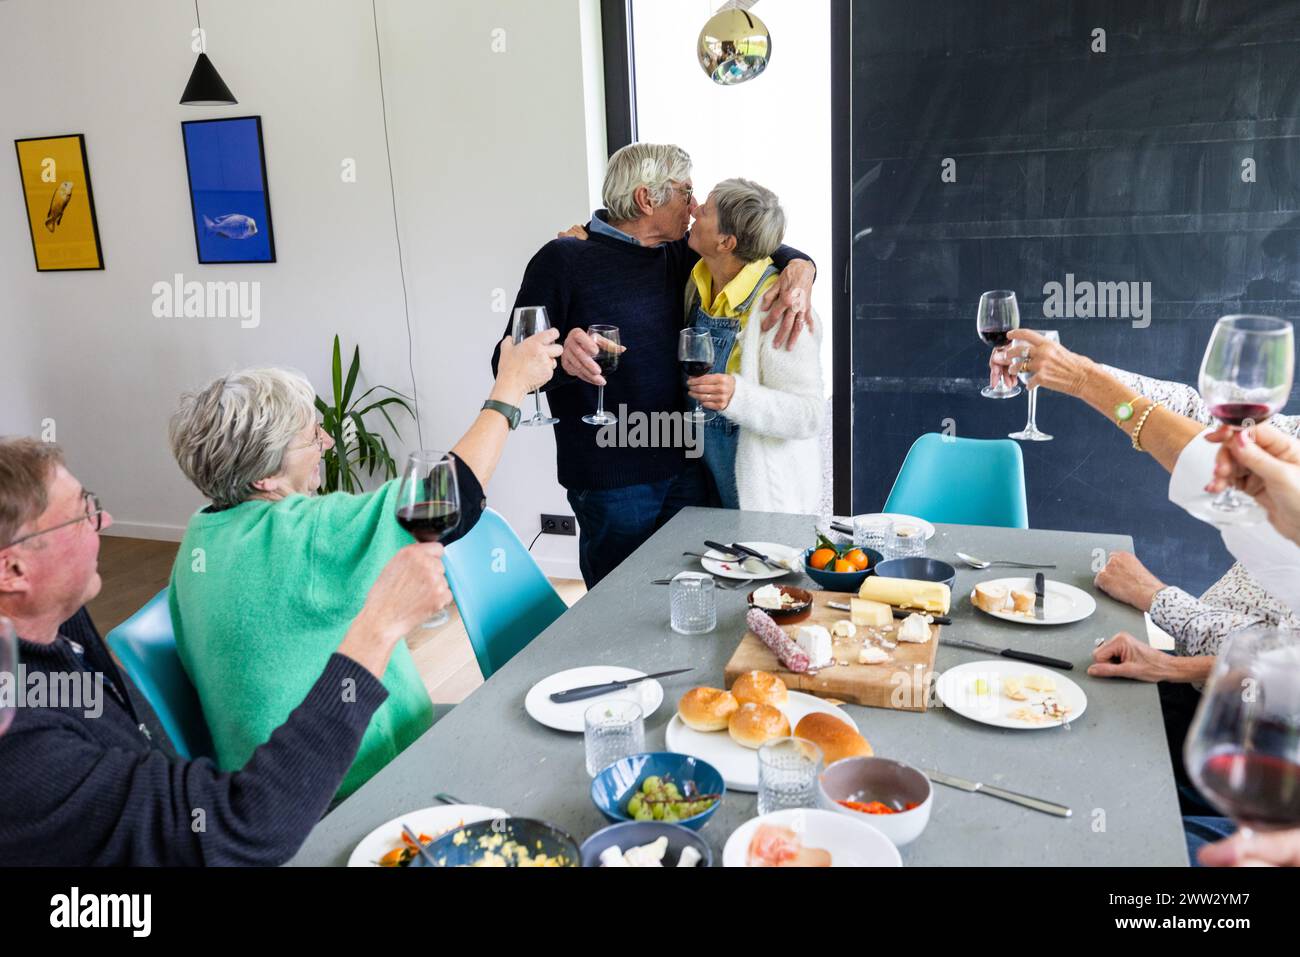 Ein intimes Familientreffen, bei dem ein älteres Paar einen liebevollen Kuss teilt, während andere ihre Gläser zum Toast heben. Die Inneneinrichtung verfügt über einen Esstisch, der mit einer Auswahl an Käse, Obst und Brot geschmückt ist, was eine gemütliche Atmosphäre der Feier schafft. Älteres Paar küsst sich bei Family Meeting Toast. Hochwertige Fotos Stockfoto